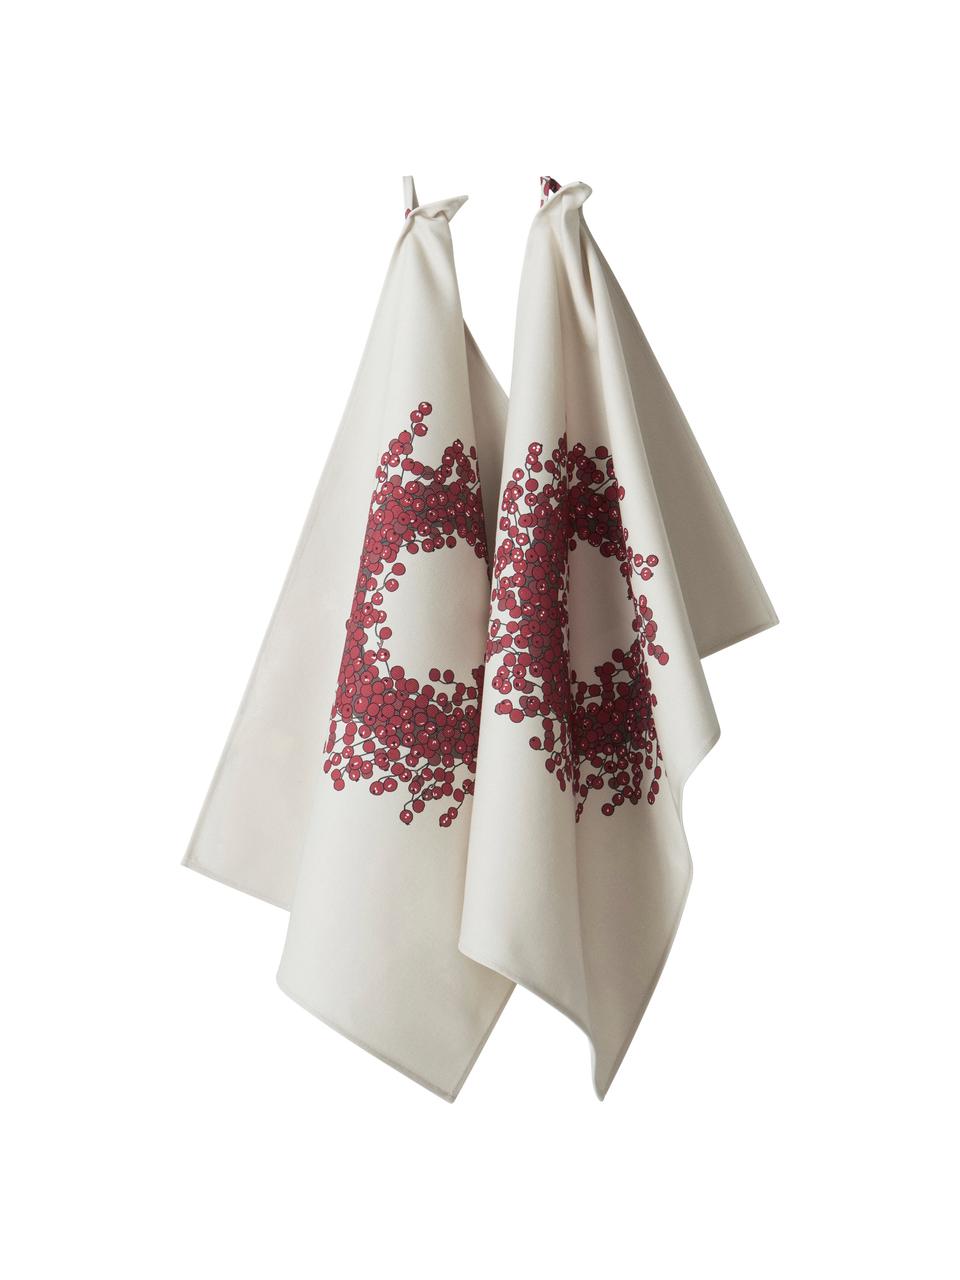 Ręcznik kuchenny Krans, 2 szt., 100% bawełna pochodząca ze zrównoważonych upraw, Kremowy, odcienie czerwonego, S 50 x D 70 cm